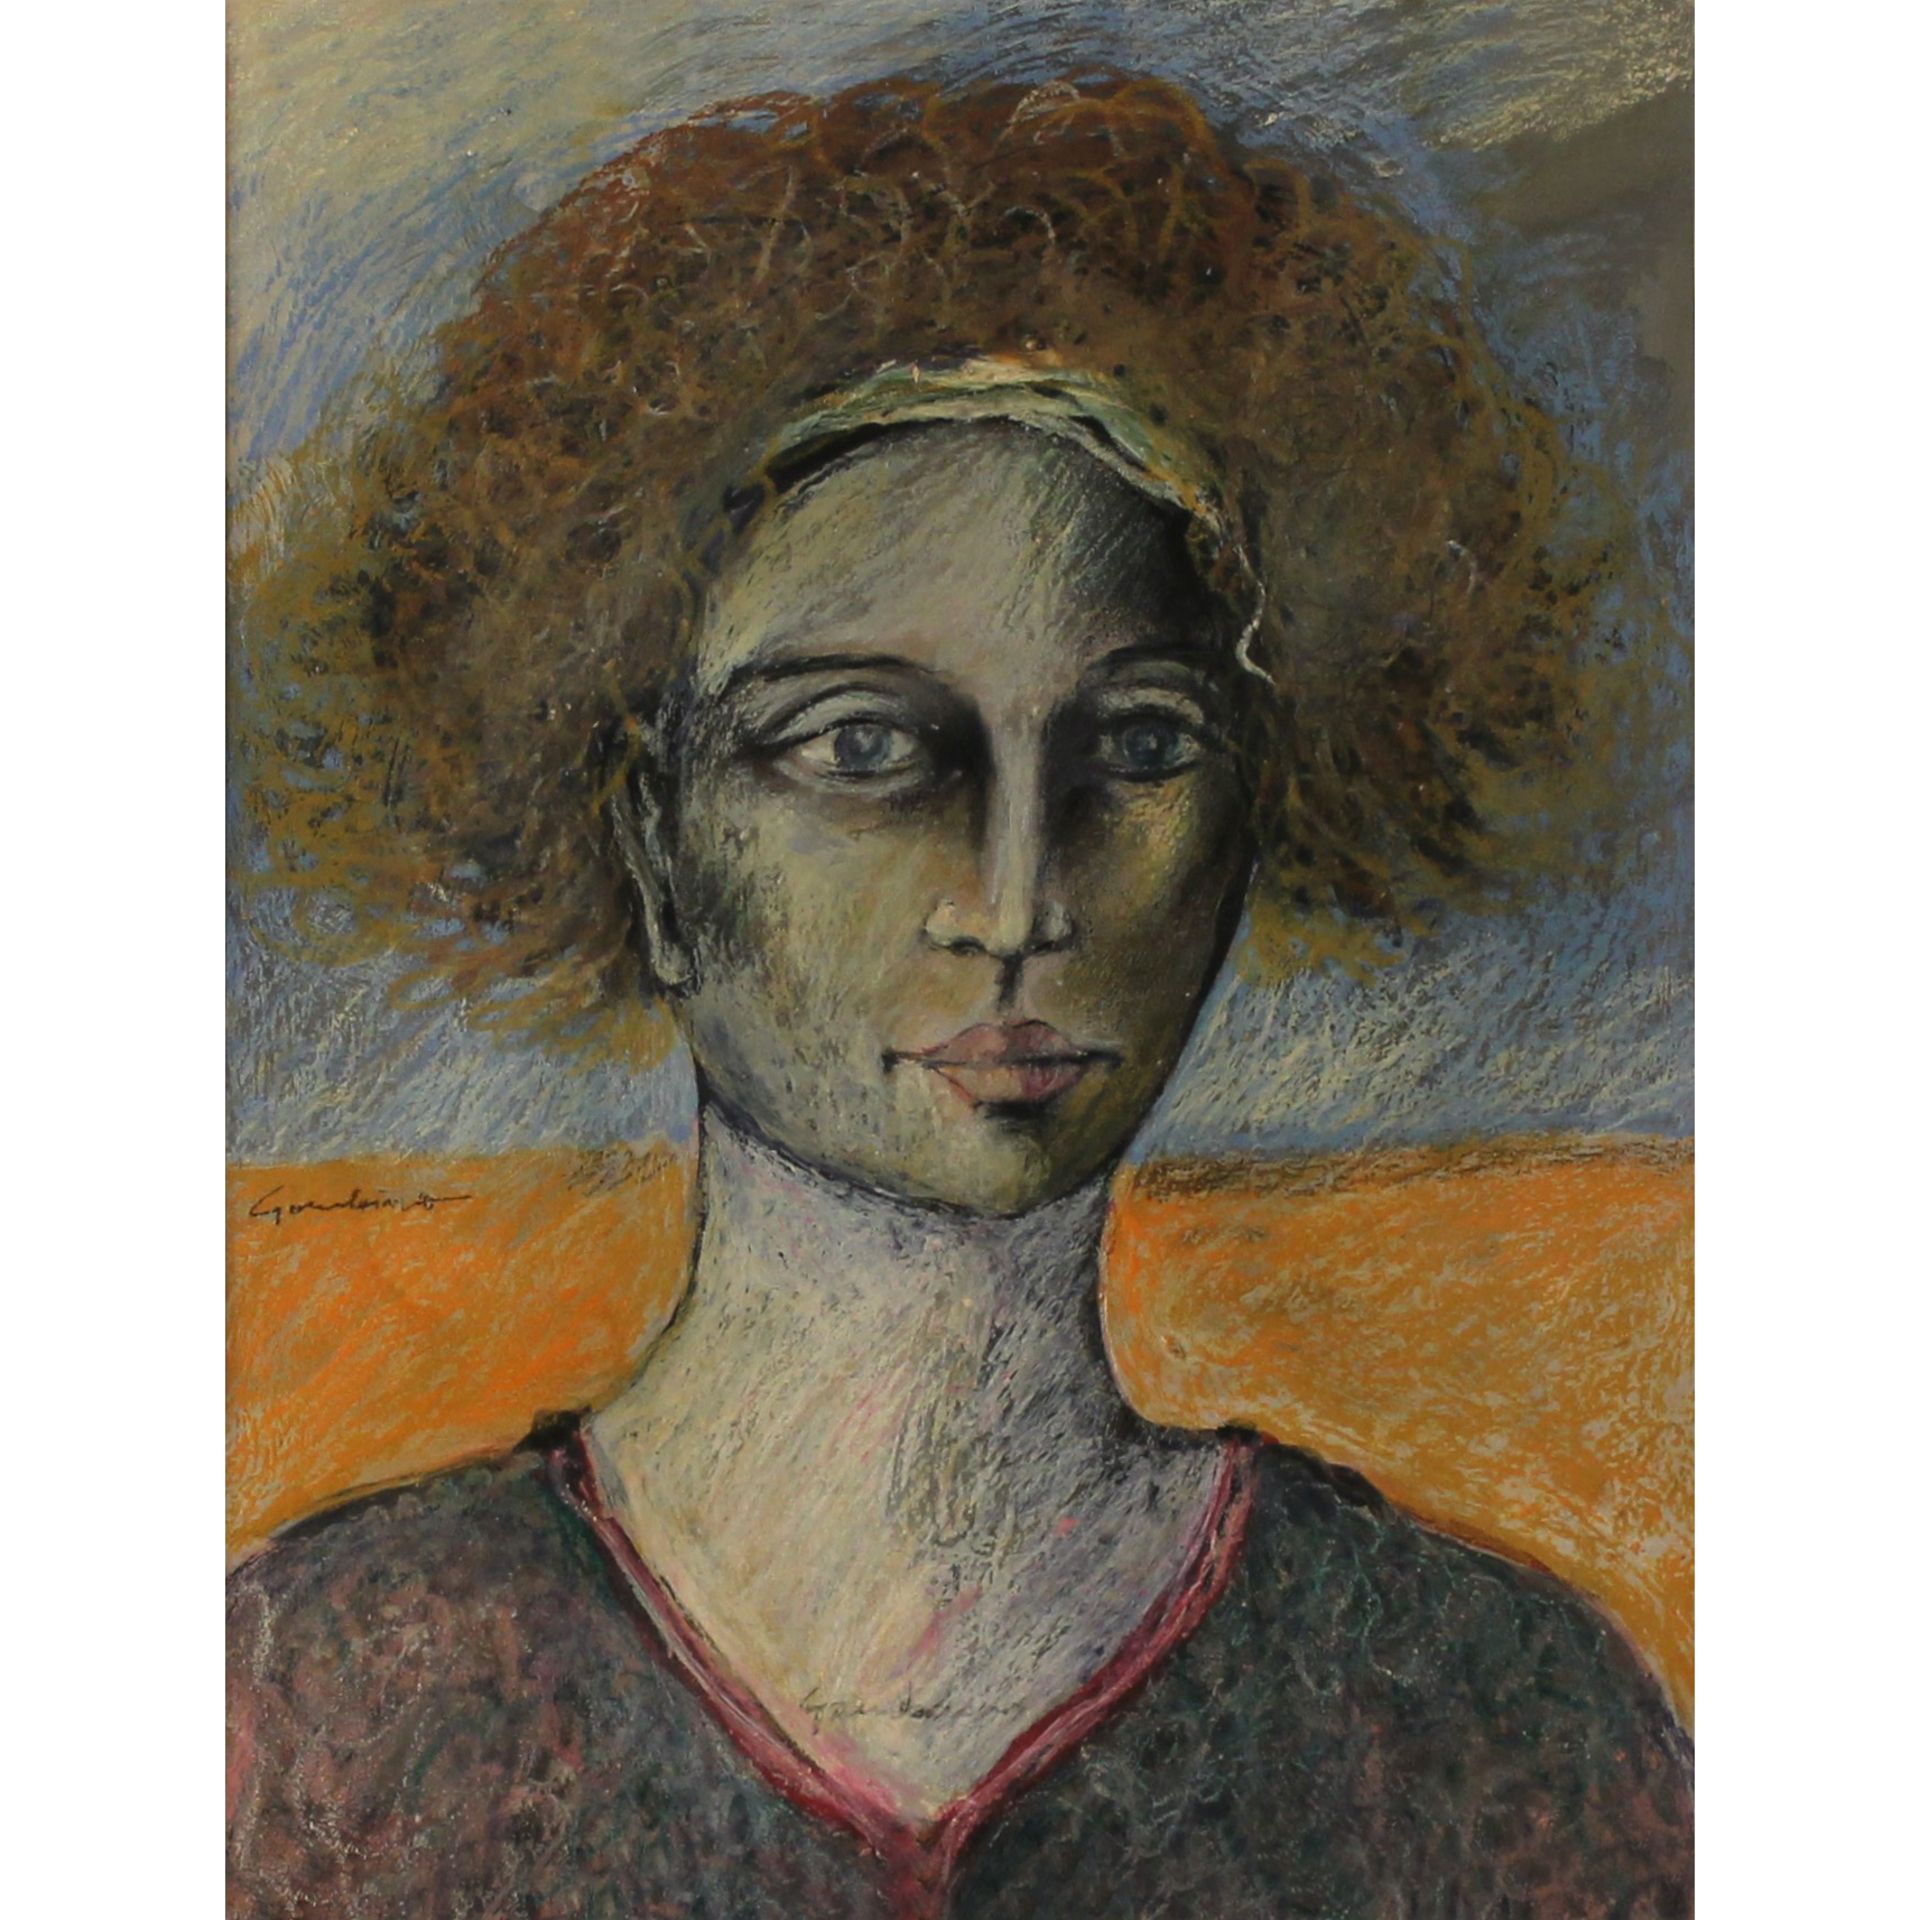 Pippo Gambino (1935/2004) "Ritratto di donna" - "Portrait of a Woman"